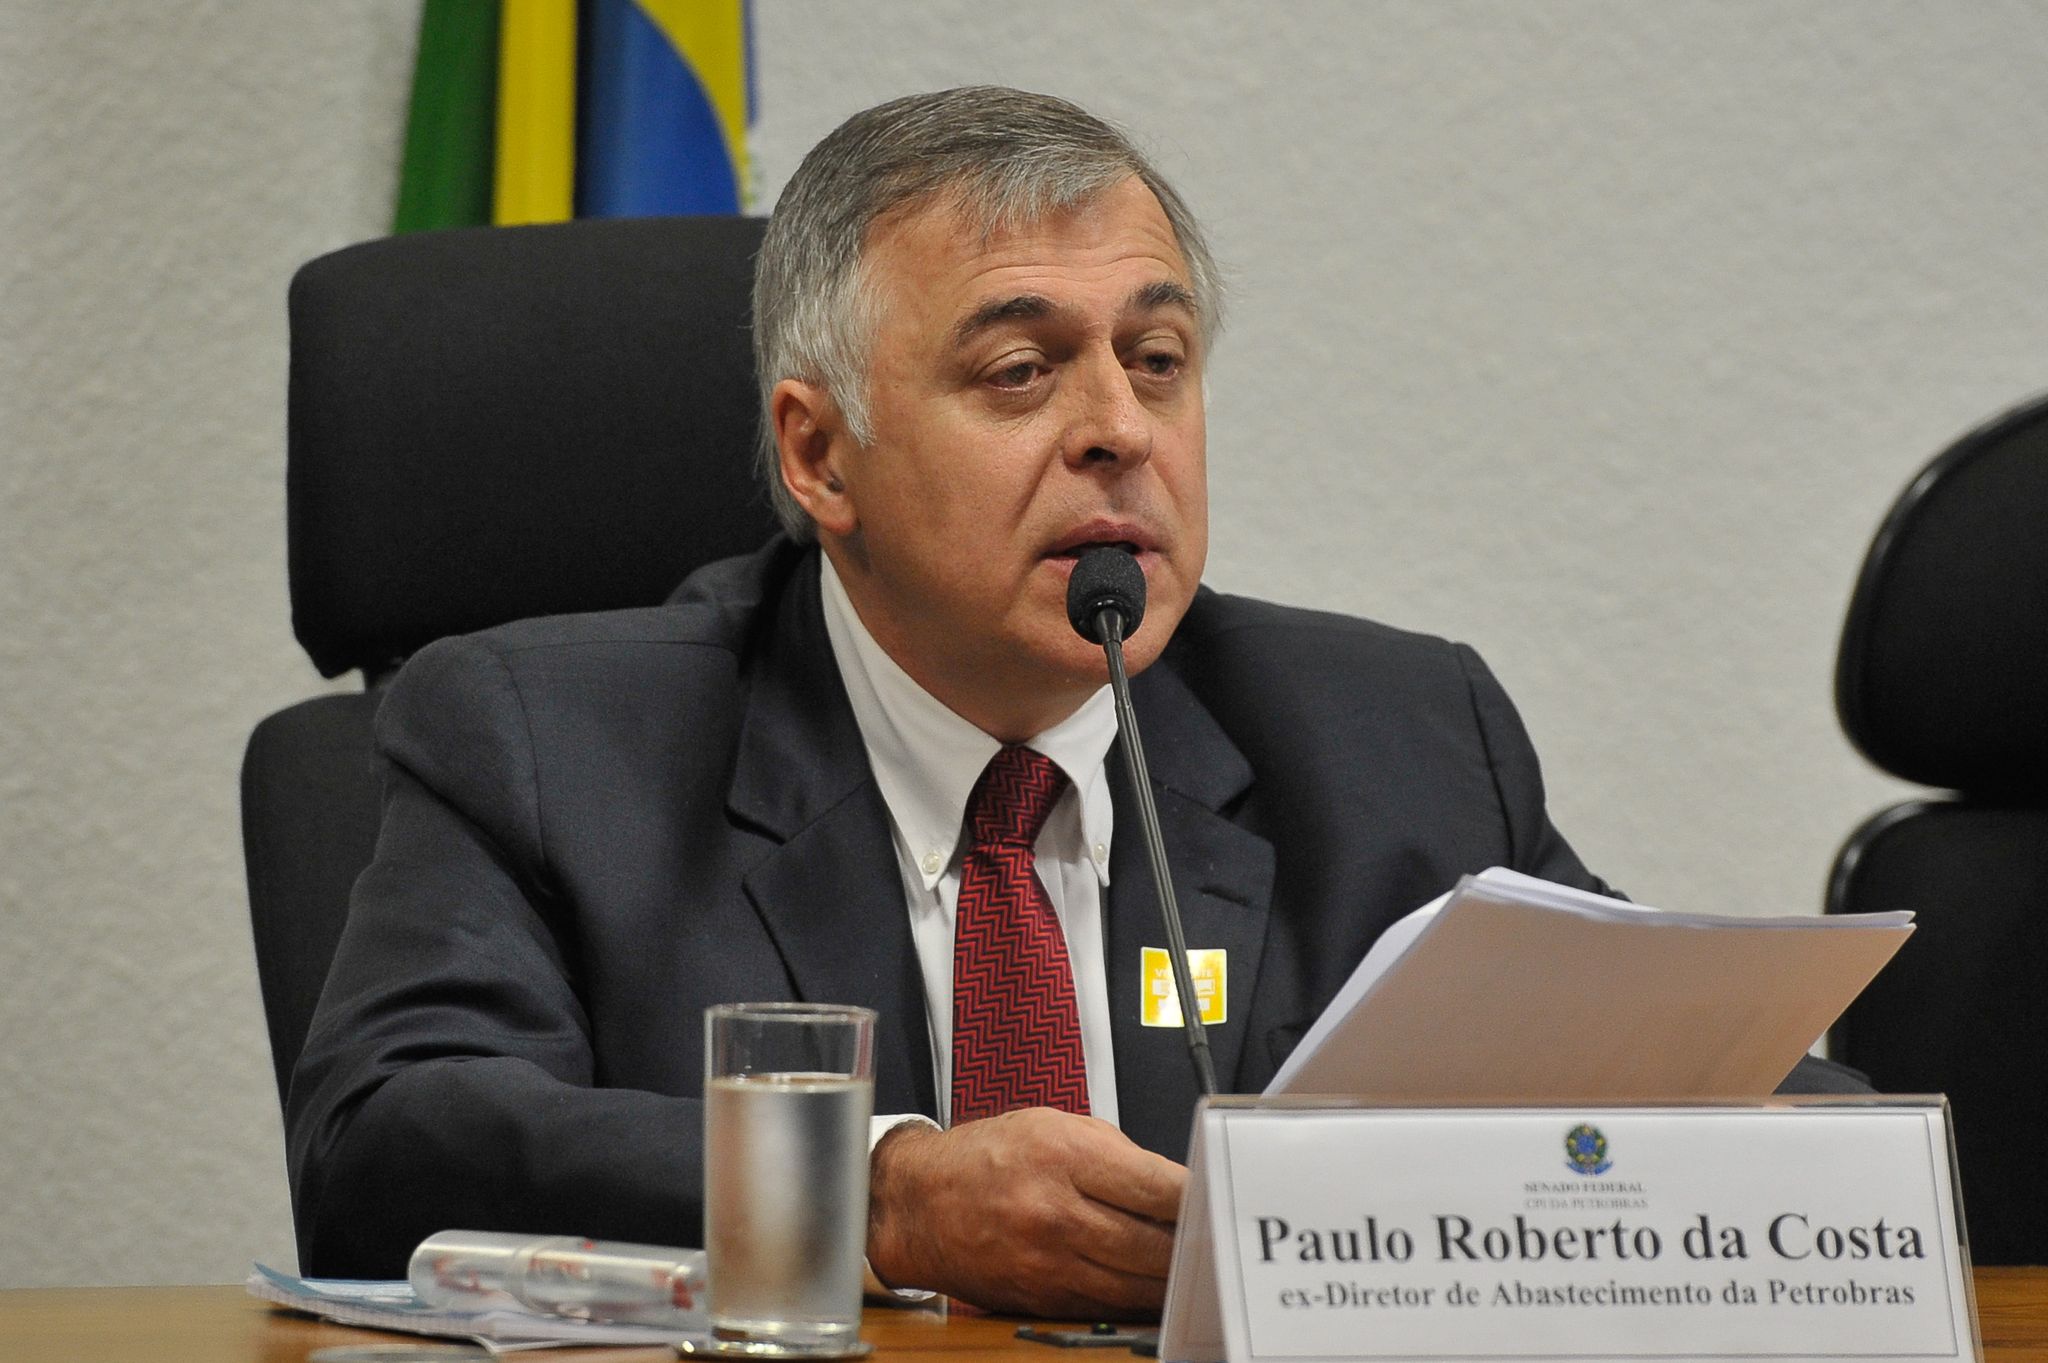 Two Major Players in Lava Jato Scheme Sentenced in Brazil